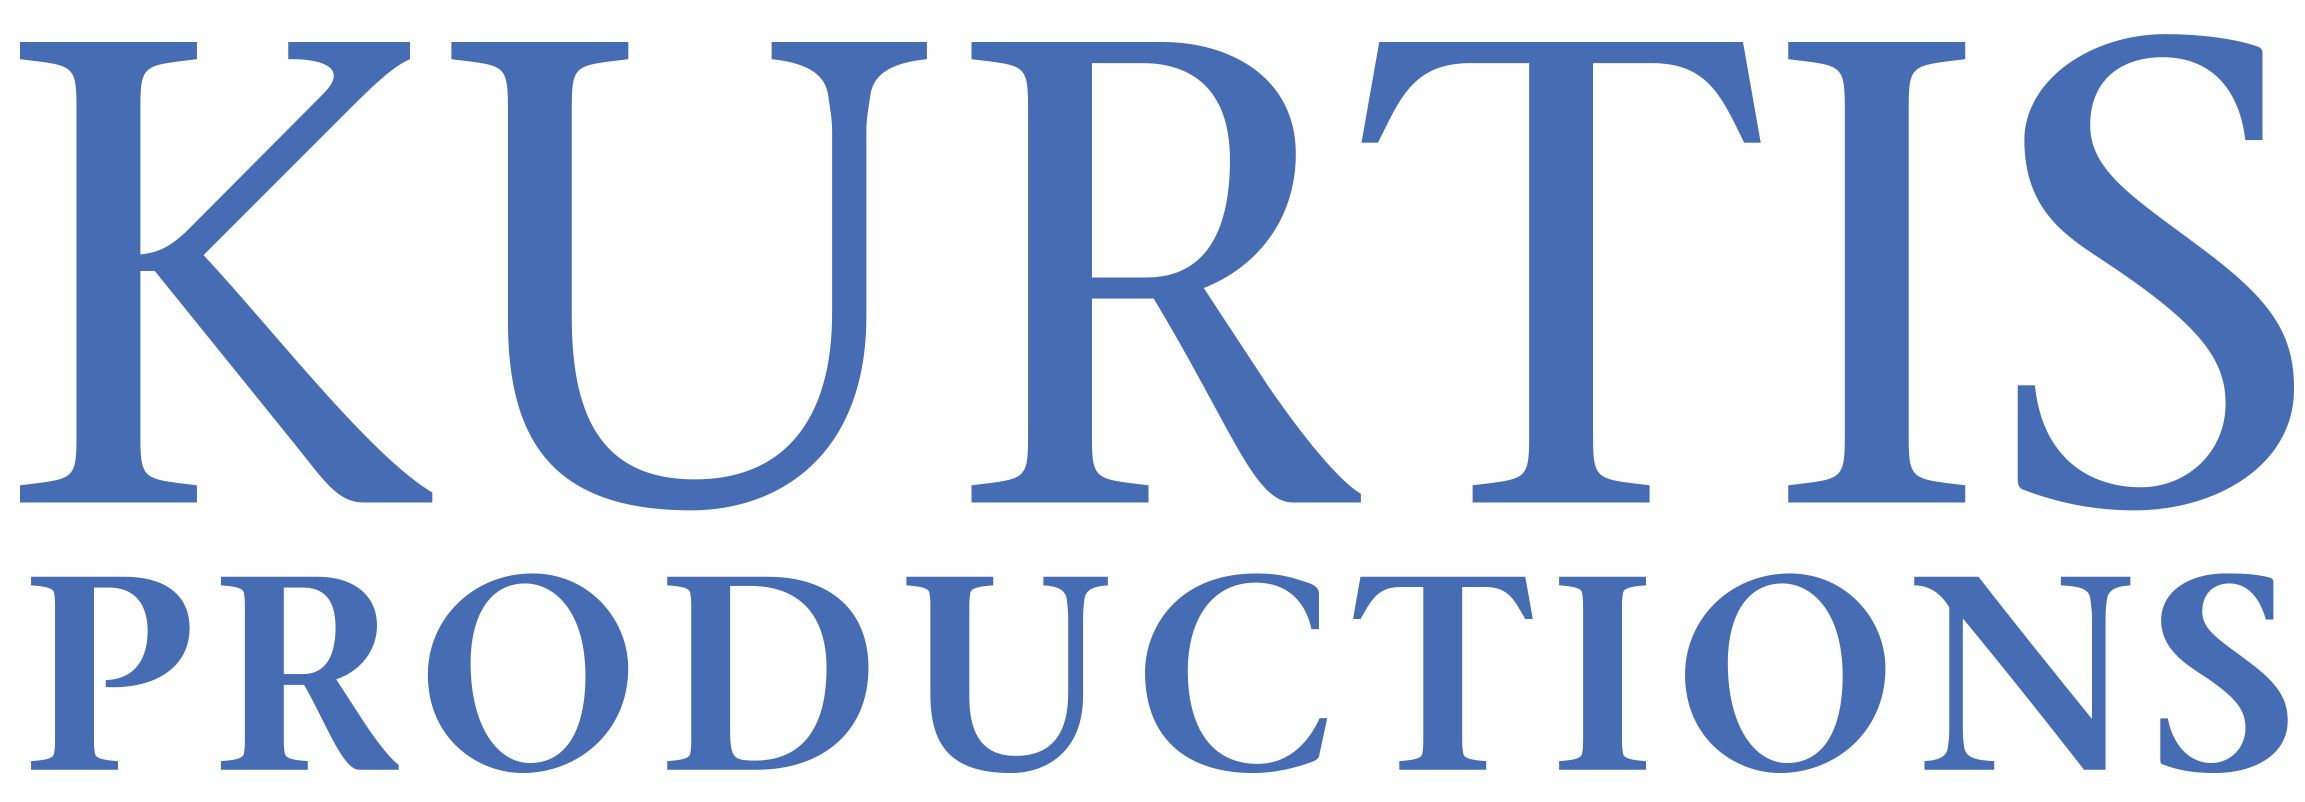 Kurtis Productions